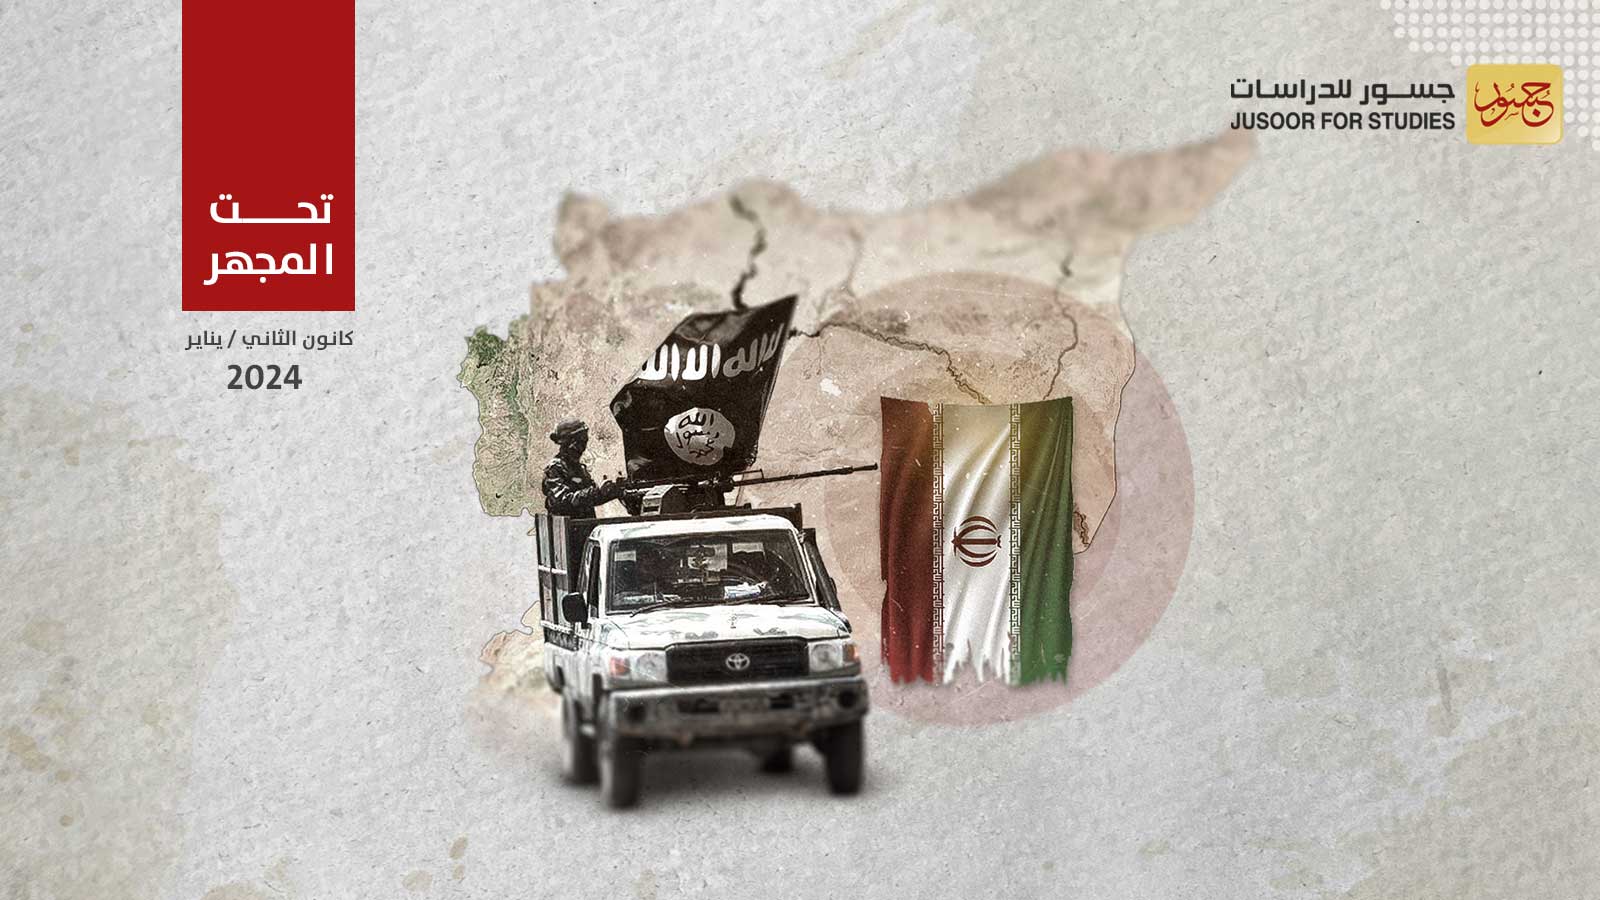 ما وراء تكثيف تنظيم داعش هجماته في البادية السورية؟